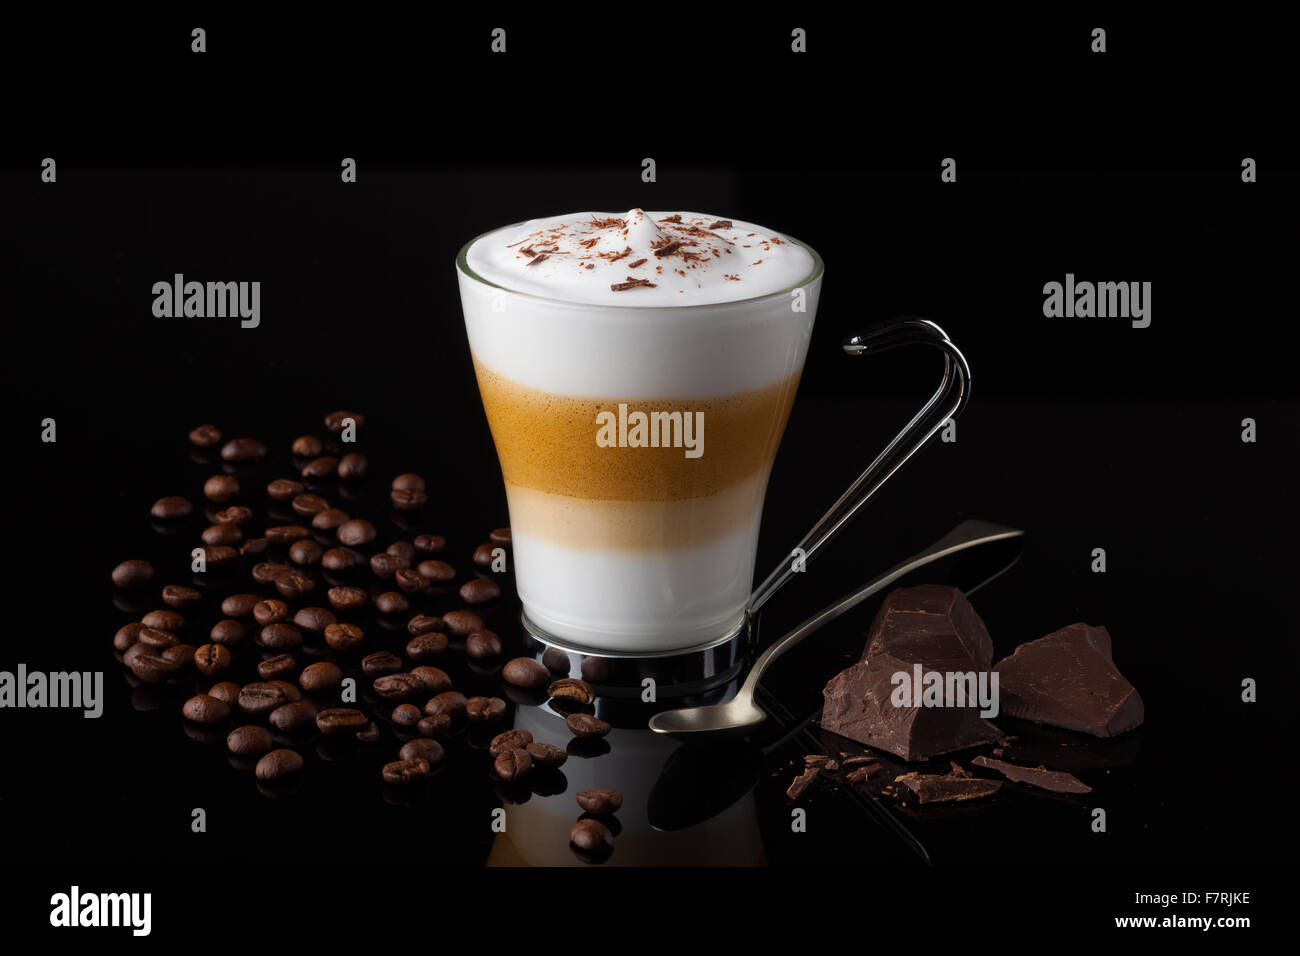 Un cappuccino italiano caffè con latte cremoso e cioccolato Foto Stock